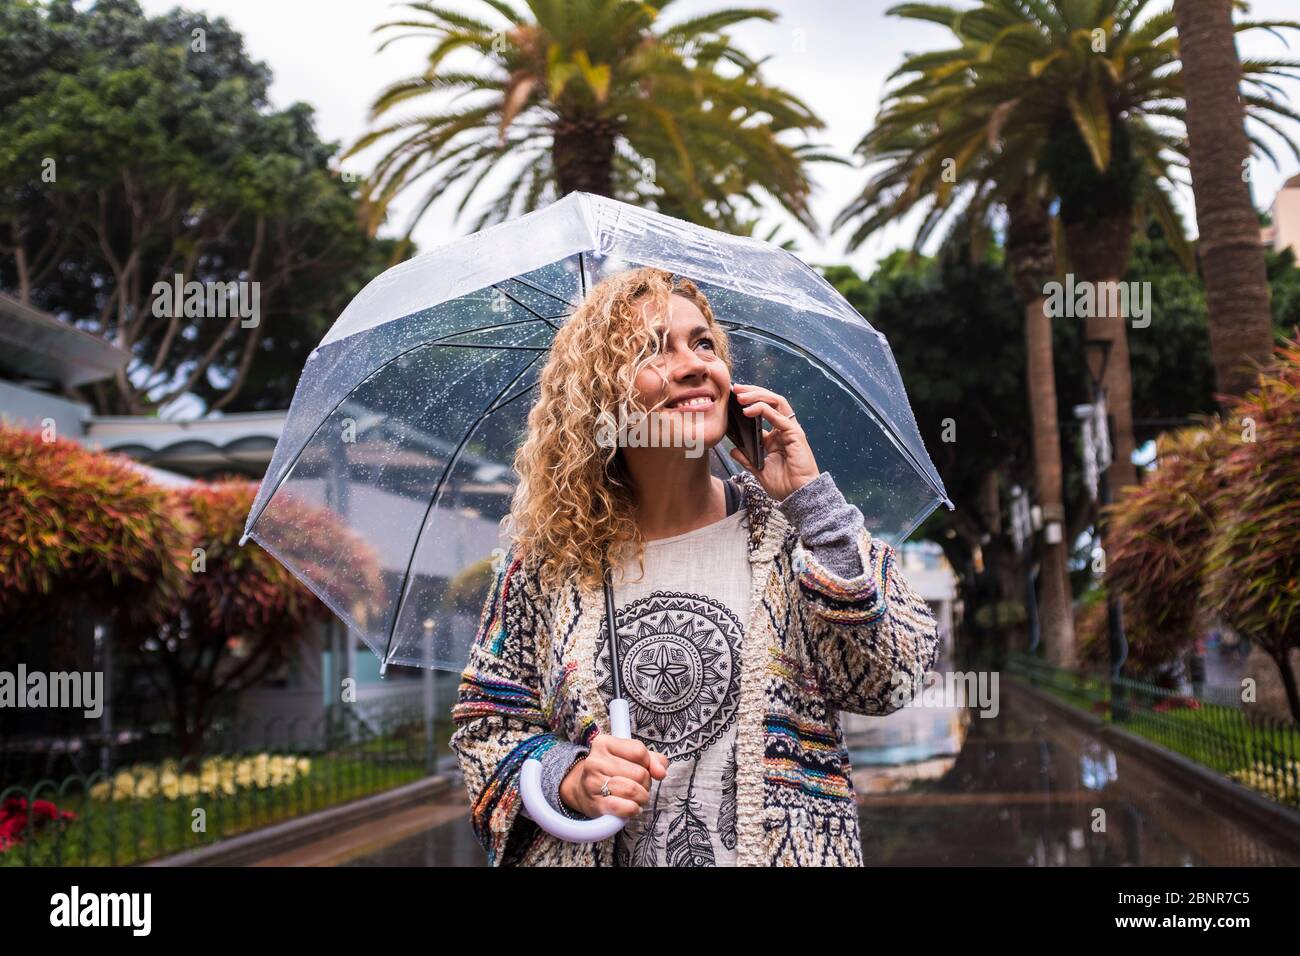 Belle et gaie tendance jeune femme caucasienne de mode à la mode dans la ville sous la pluie avec un parapluie transparent - saison froide concept appréciant le parc urbain Banque D'Images